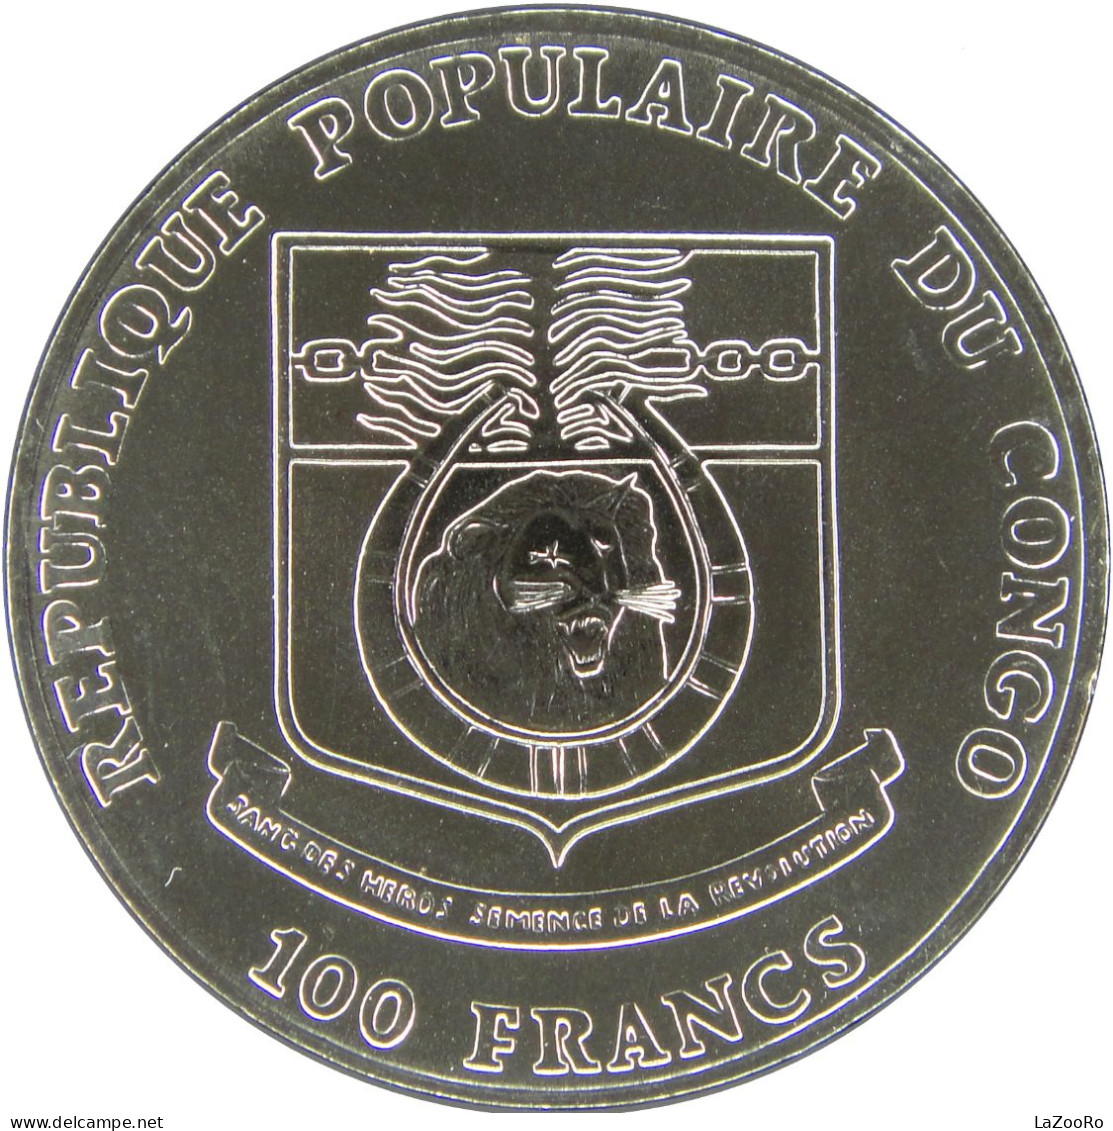 LaZooRo: Congo 100 Francs 1991 Barcelona 1992 UNC Rare - VR-Rep. Kongo - Brazzaville